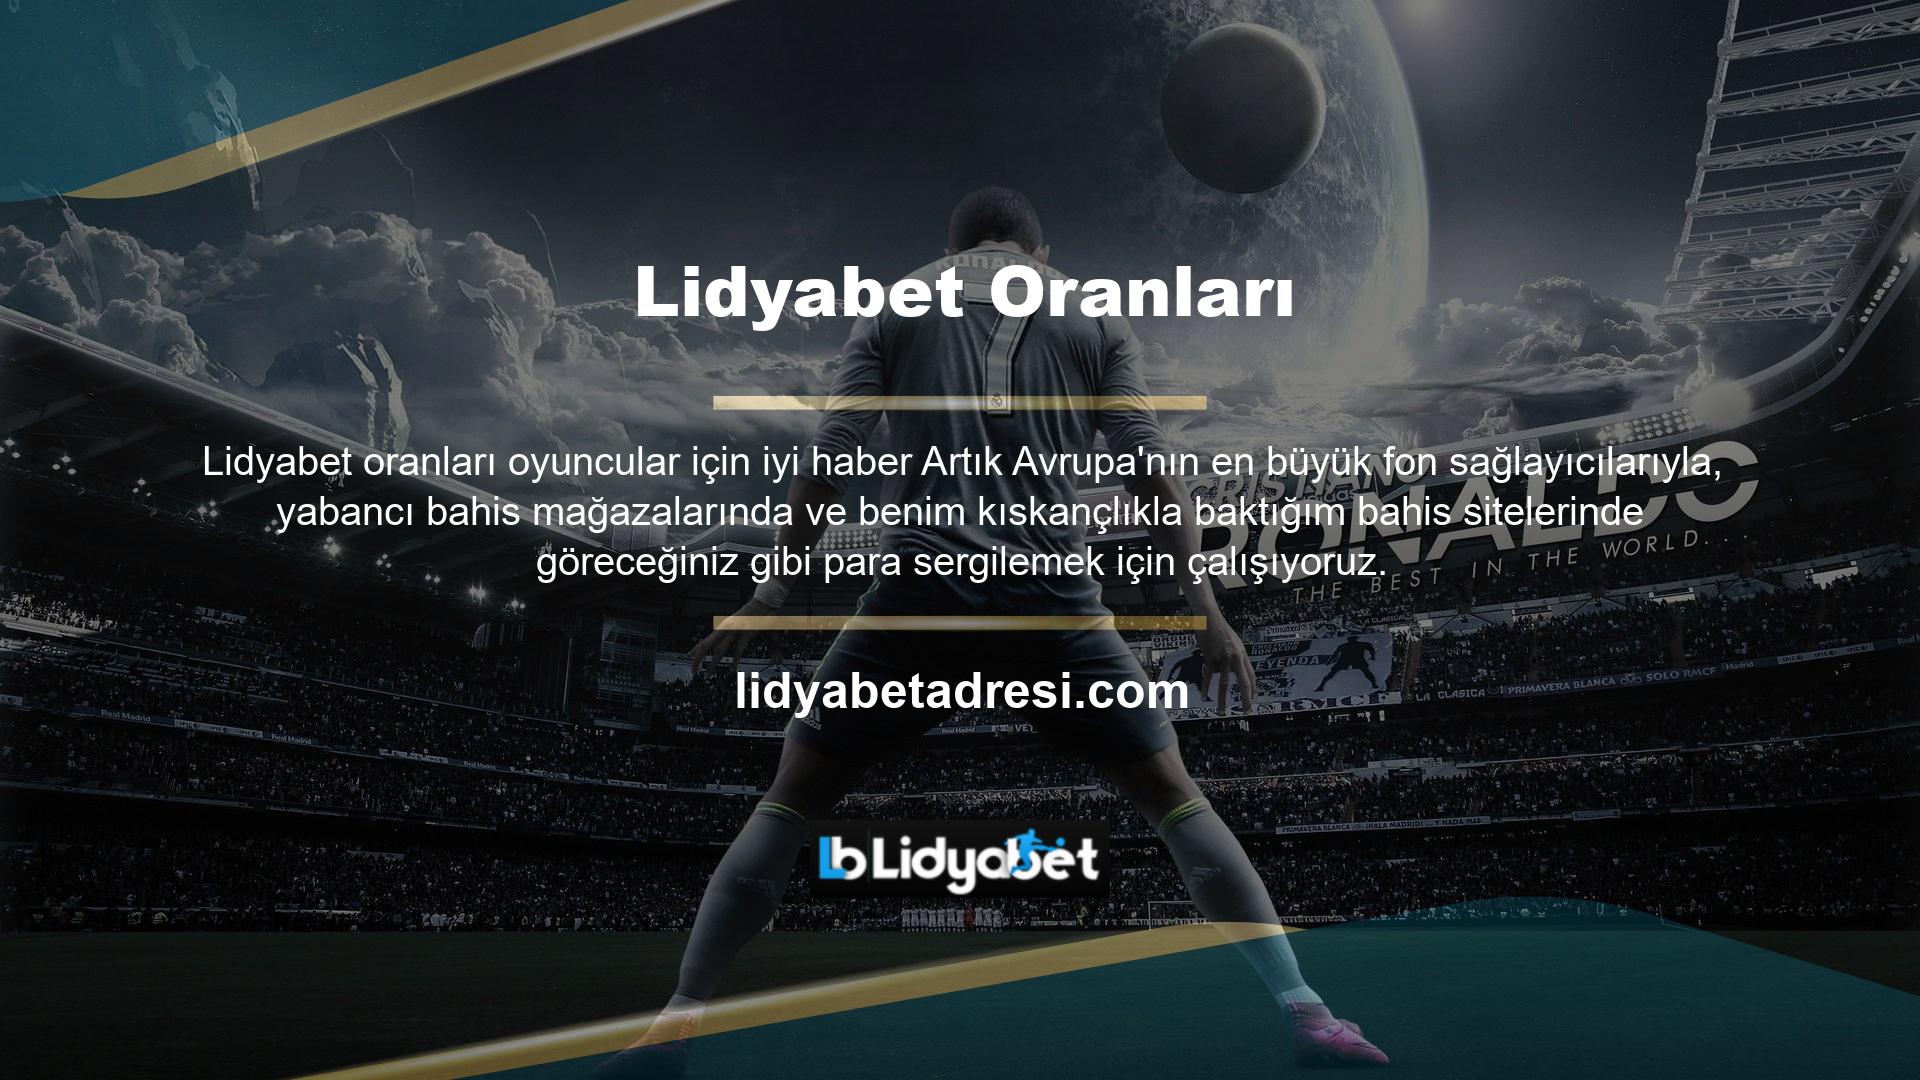 Lidyabet, yakın zamanda tüm Avrupa'yı dolaşan bir ekibin Türkiye pazarı için geliştirdiği bir web sitesi olarak hayatımıza girdi